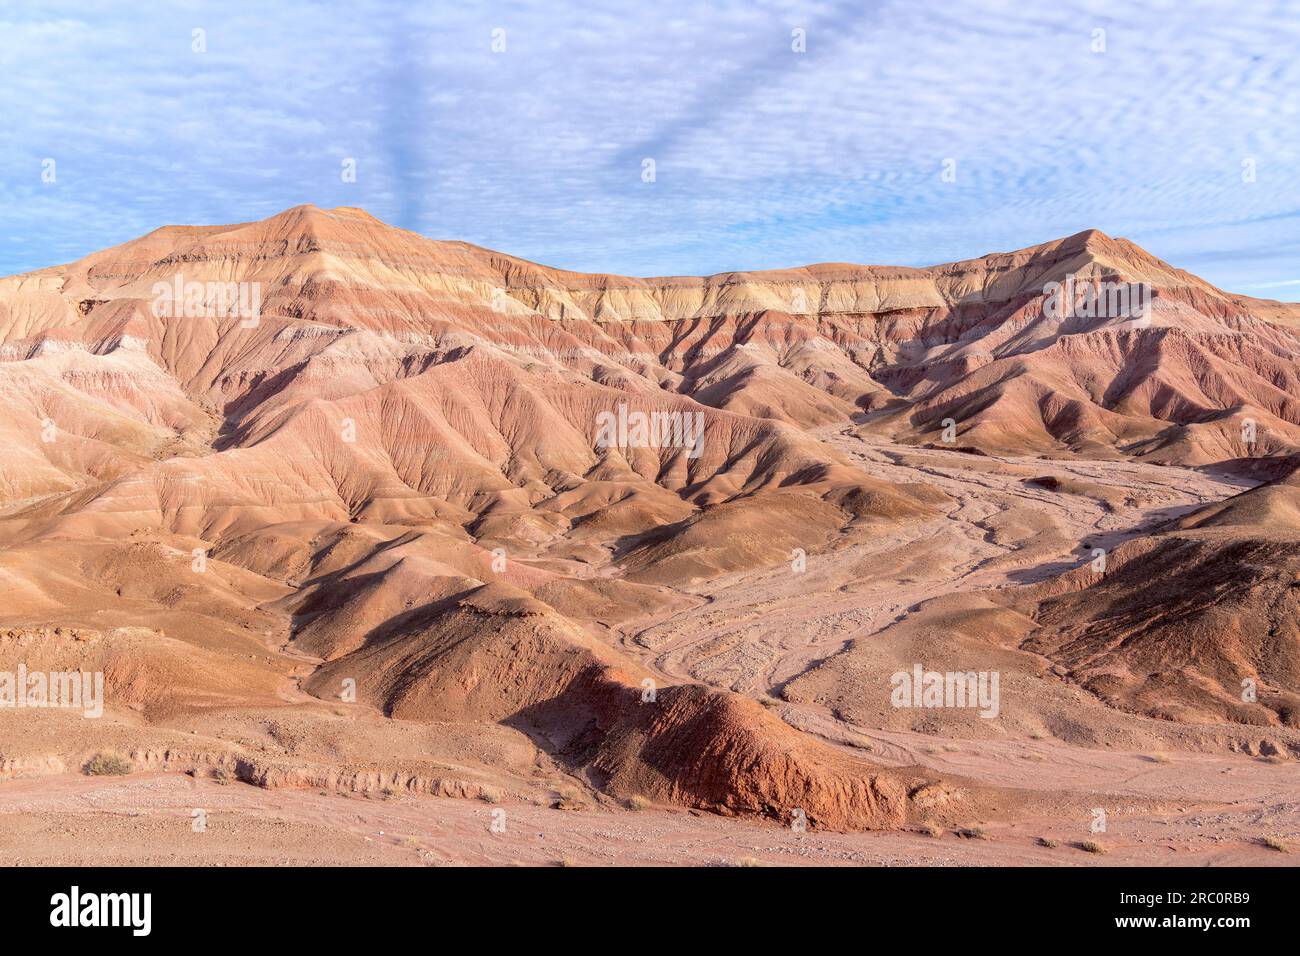 Erosinal, mesas, collines ondulantes et paysage désertique, le désert peint, près de Tuba City, AZ, USA, Par Dominique Braud/Dembinsky photo Assoc Banque D'Images